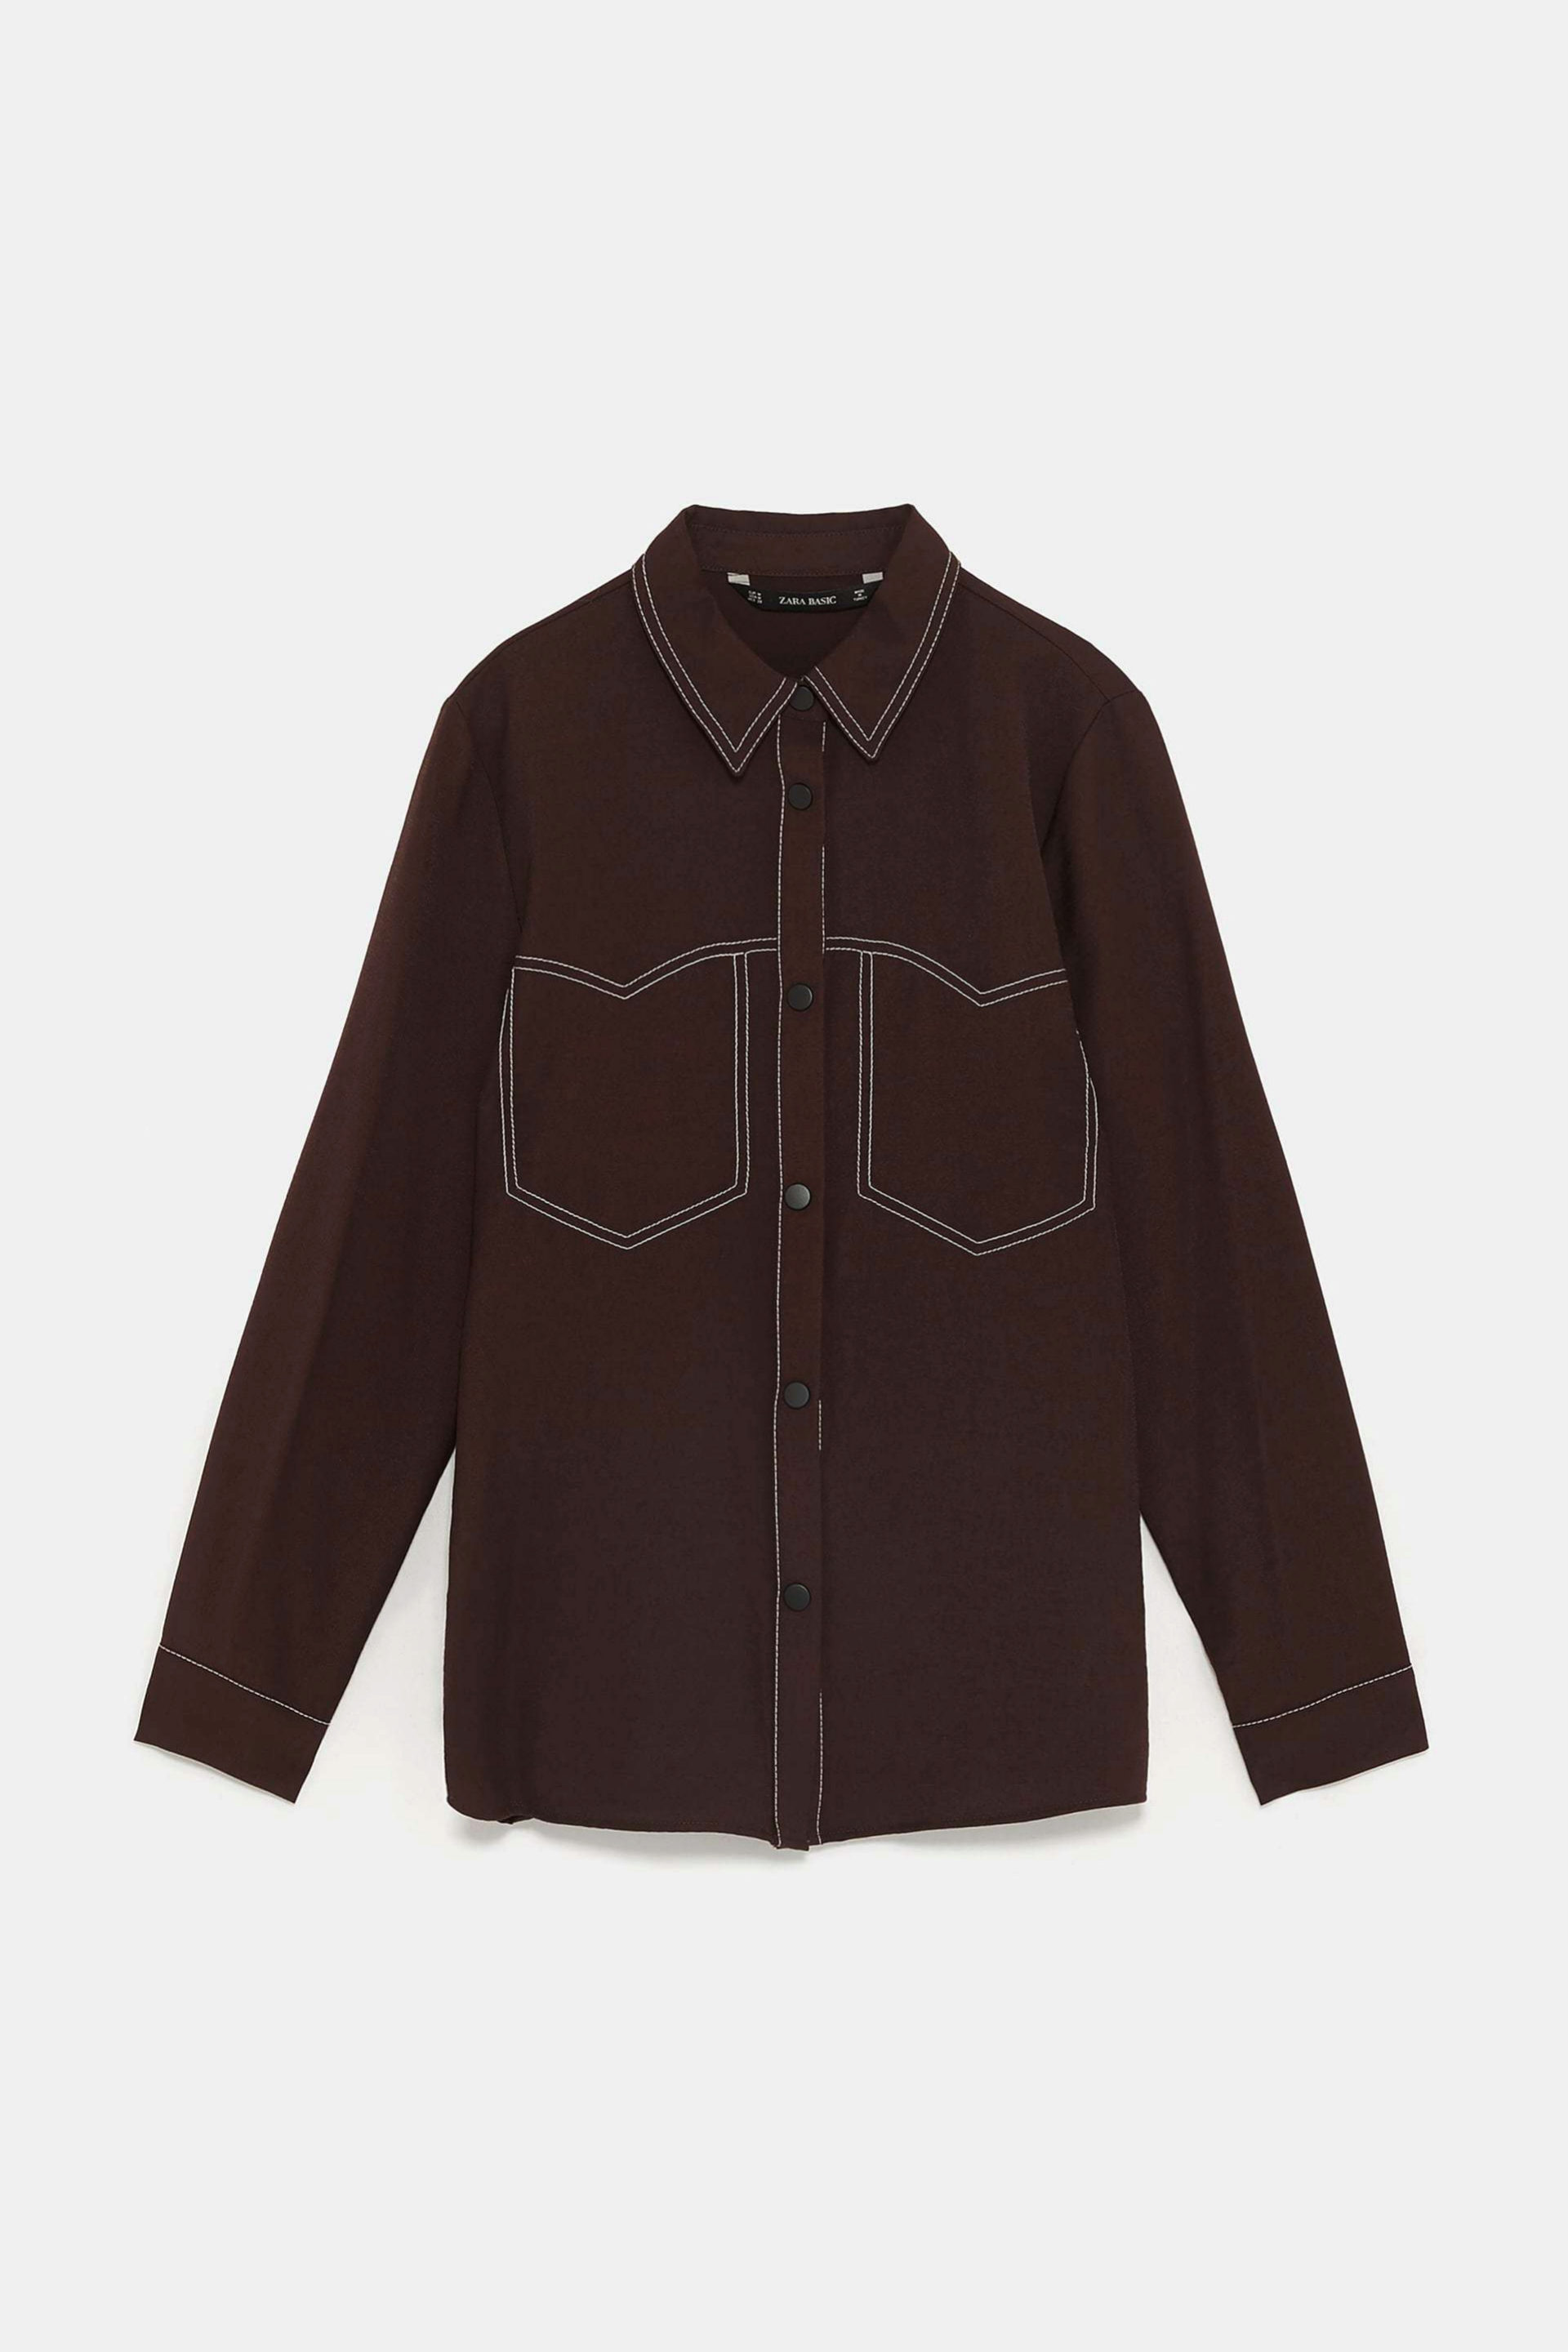 Camisa con pespuntes en marrn chocolate de Zara (9,99)